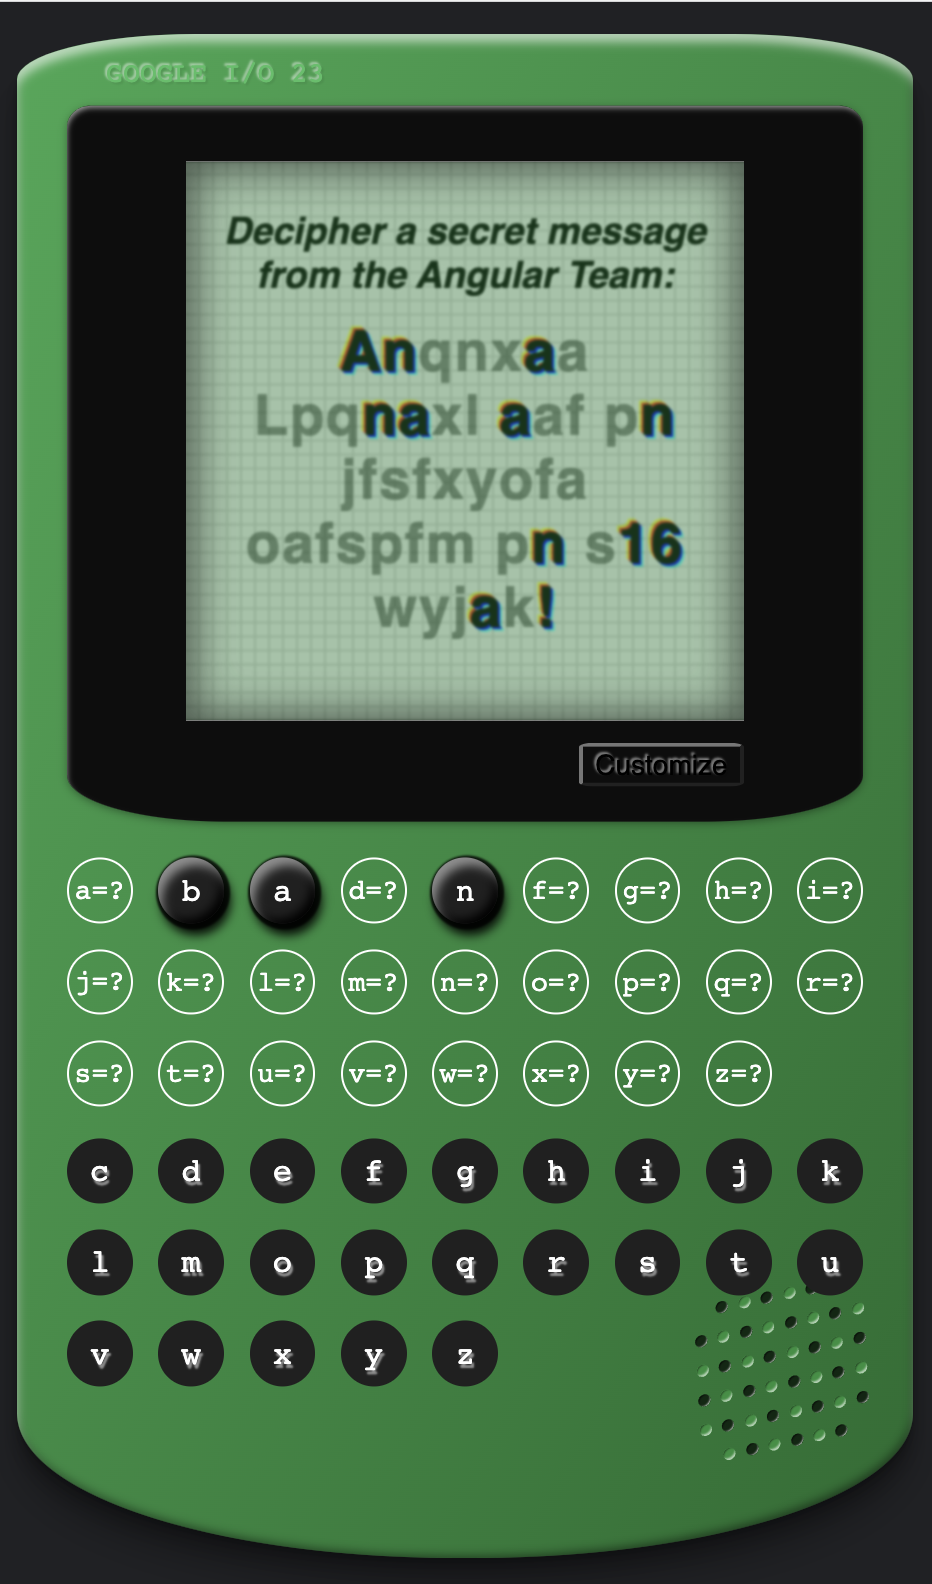 Jeu Cypher Angular ressemblant à une console de jeu verte vintage, avec un message caché à l'écran : "Anqnxaa Lpcnaxl aaf pn jfafxyofa aofapfm pn a16 wyjak!"